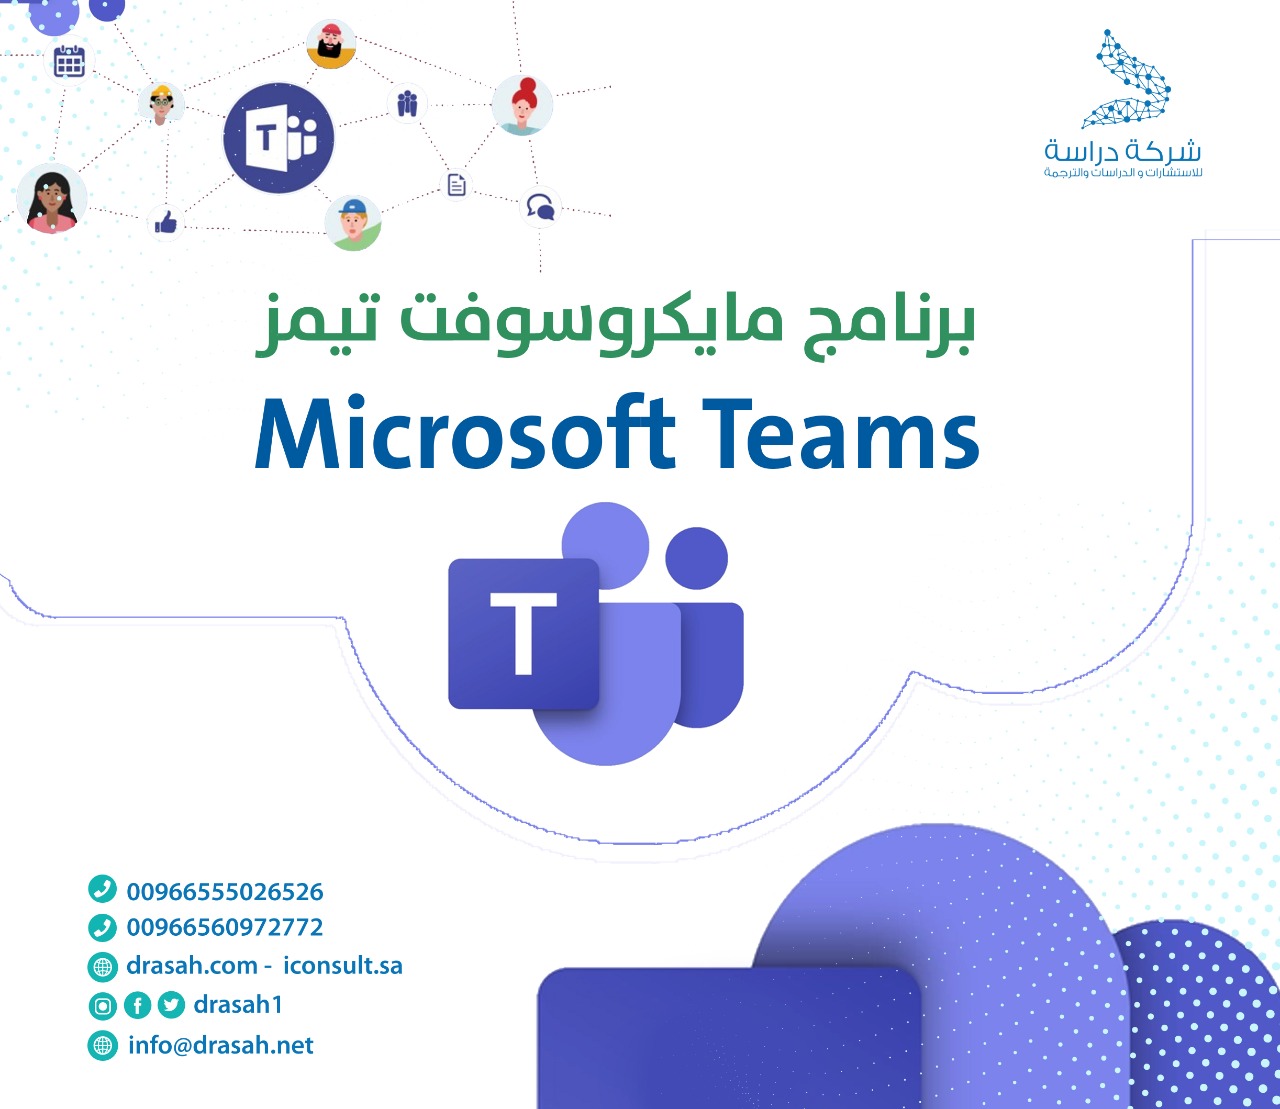 برنامج مايكروسوفت تيمز Microsoft Teams